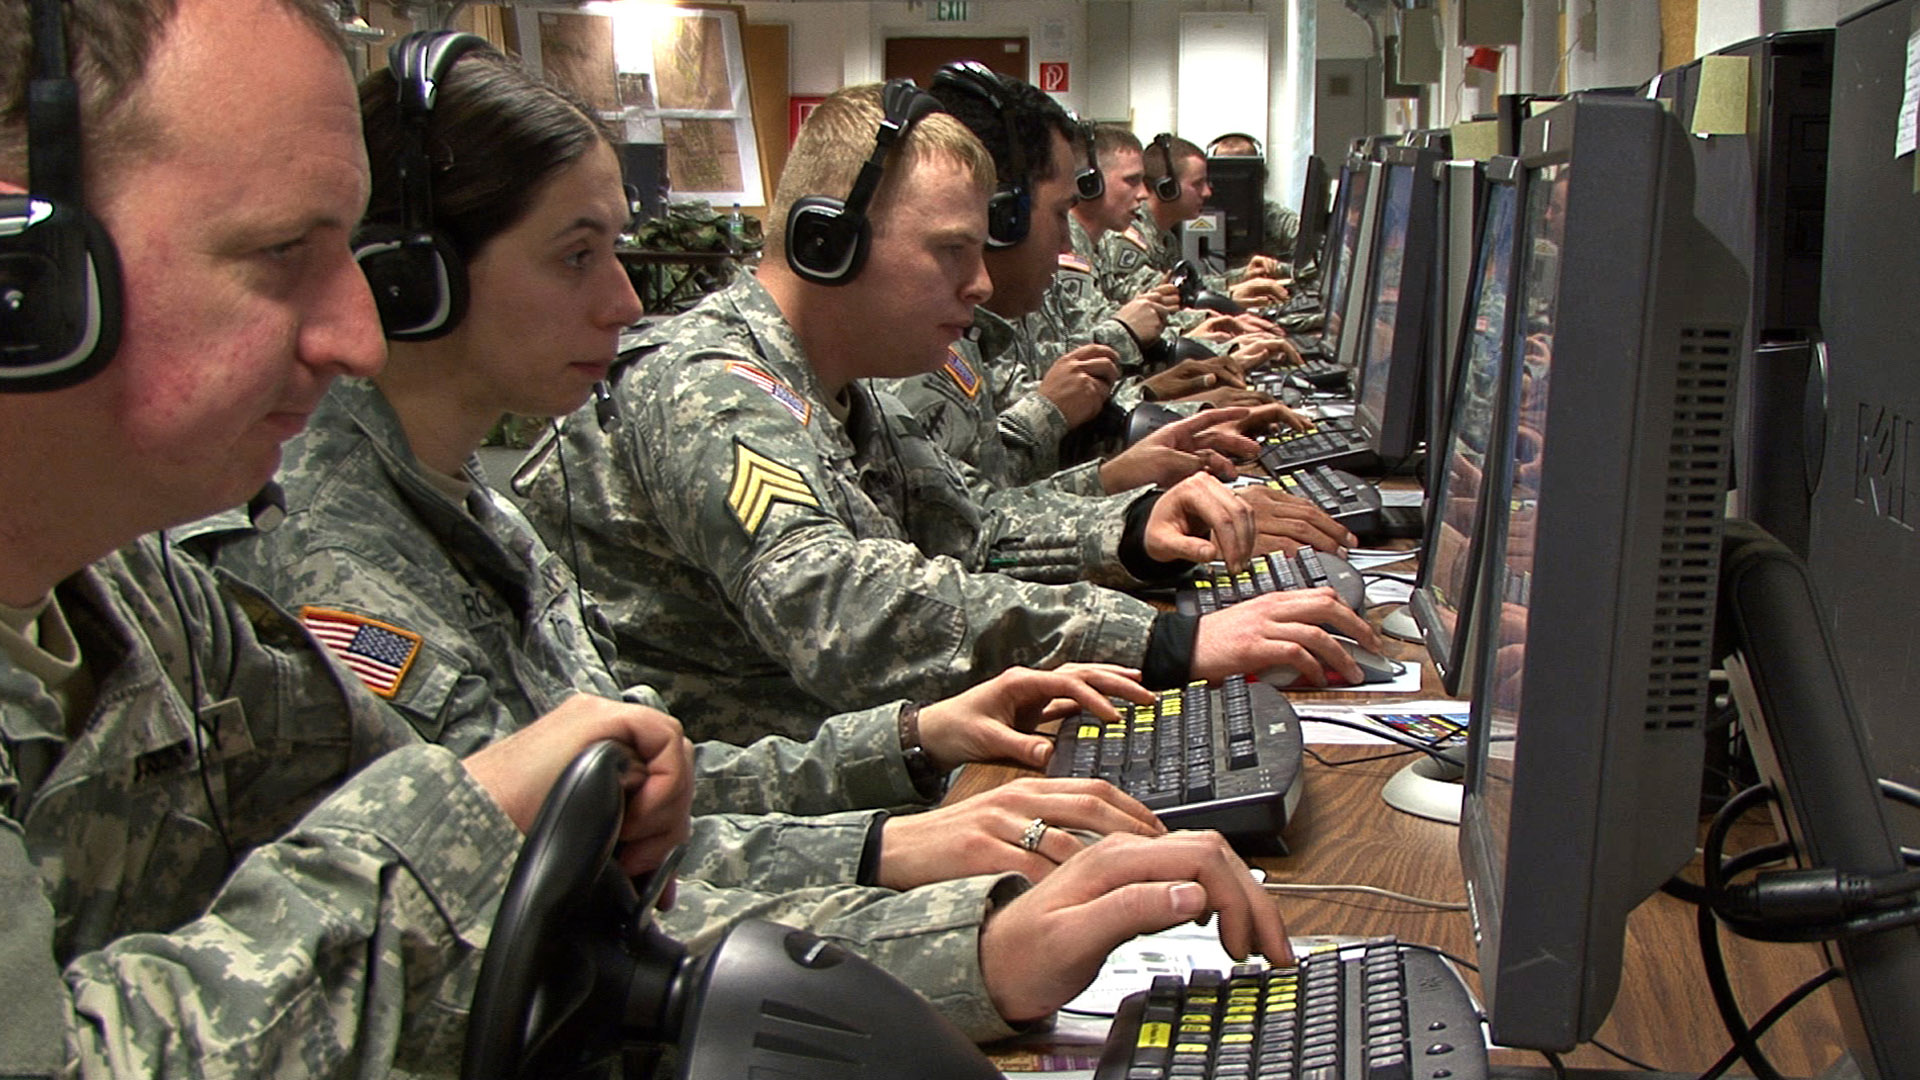 La aplicación podría ser útil para mantener la confidencialidad en las comunicaciones de las fuerzas de seguridad. Fuente: Ejército de EEUU/ Flickr